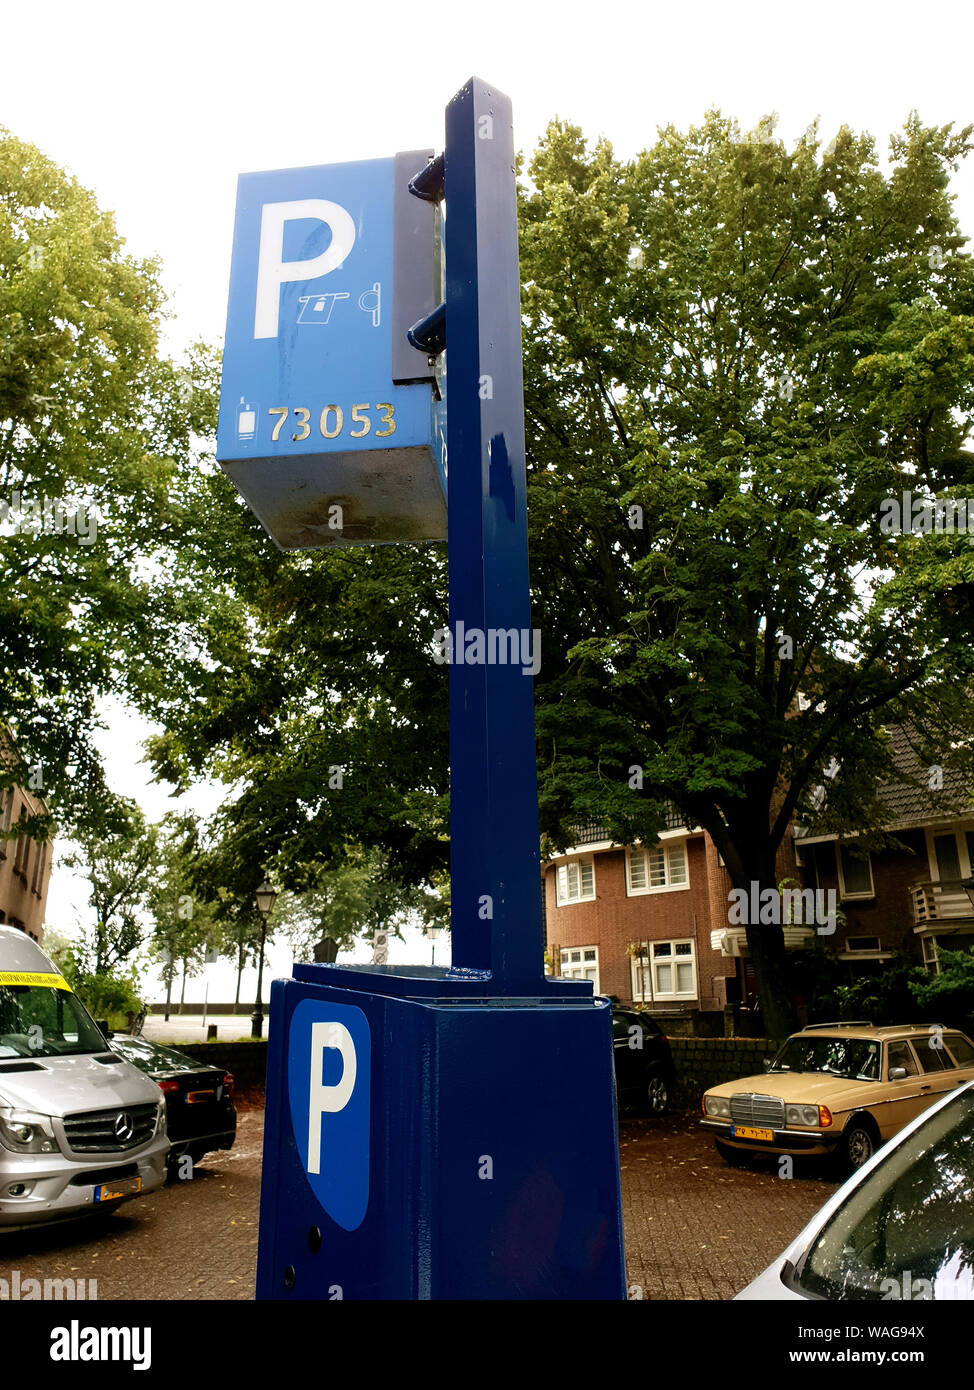 https://c8.alamy.com/compde/wag94x/parkuhr-mit-zone-code-fur-mobile-parken-mit-parkplatz-app-wag94x.jpg